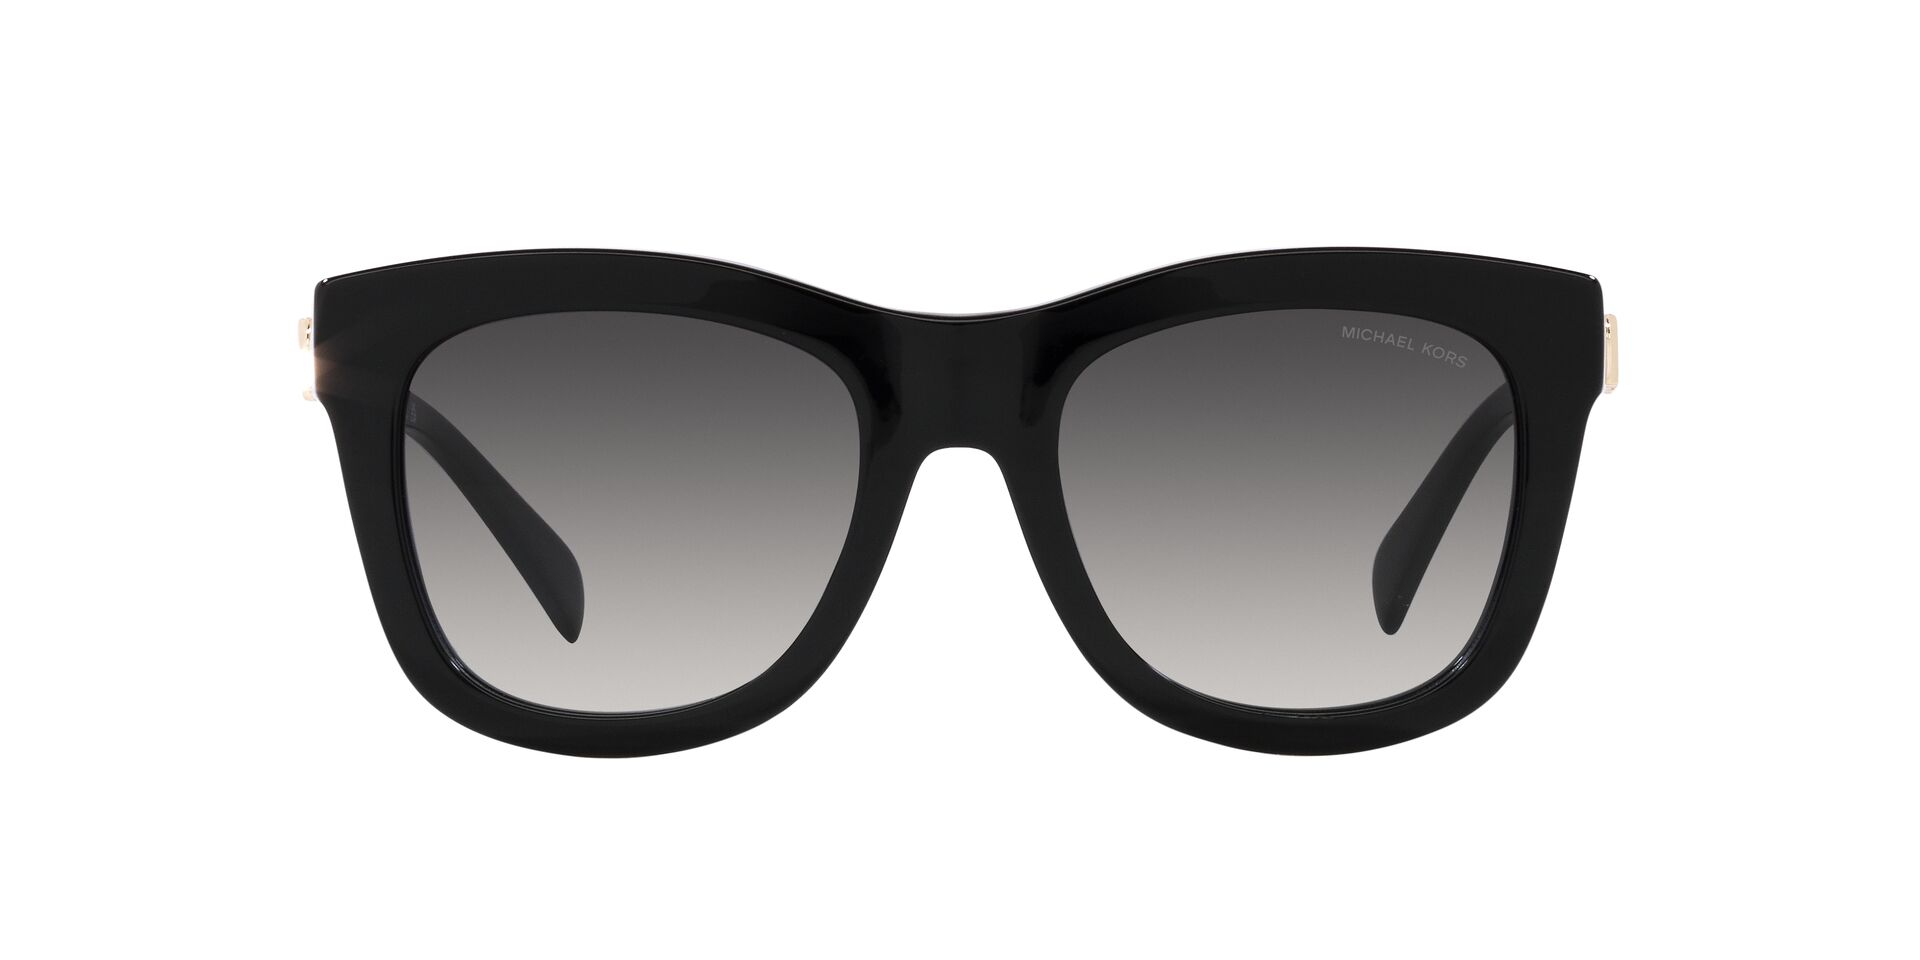 CHANEL Square Frame Sequin Sunglasses 4270 Black | FASHIONPHILE